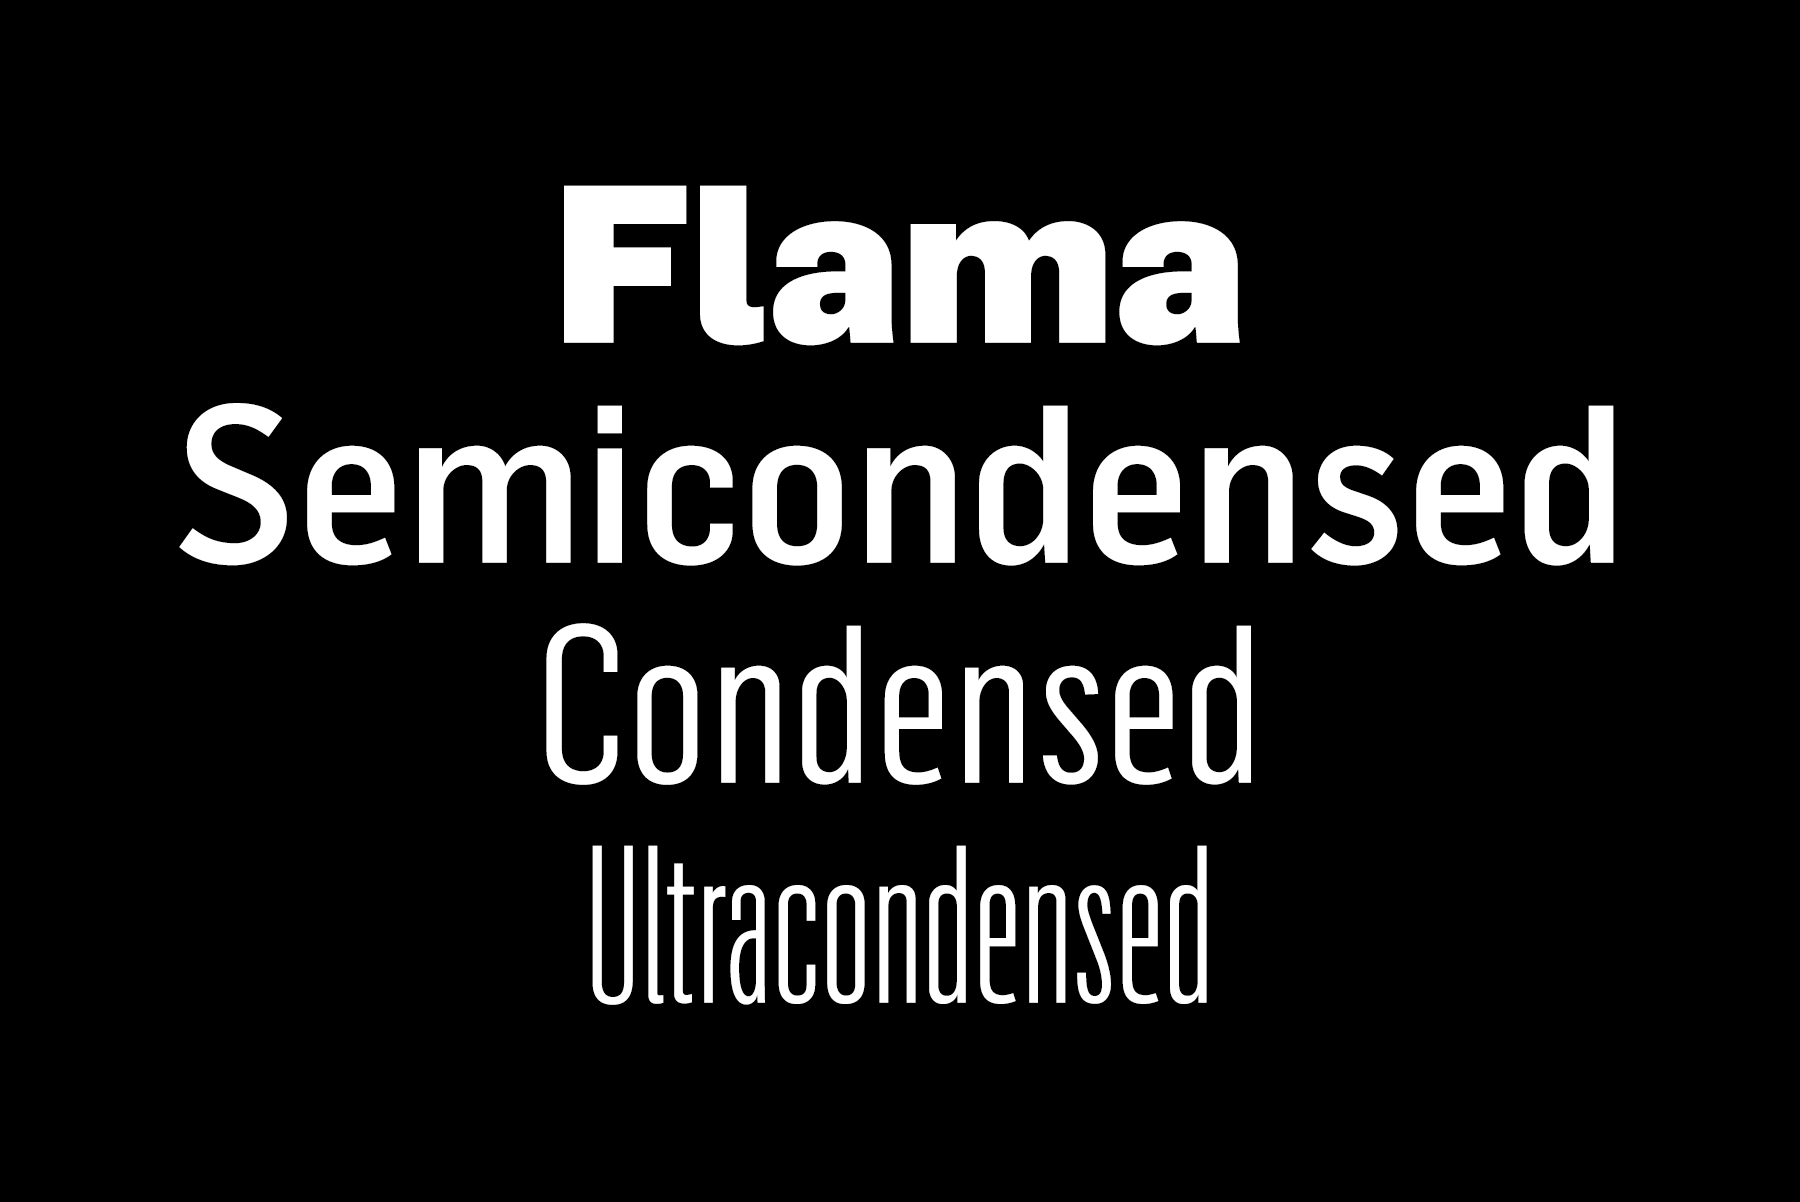 Font Flama Semicondensed